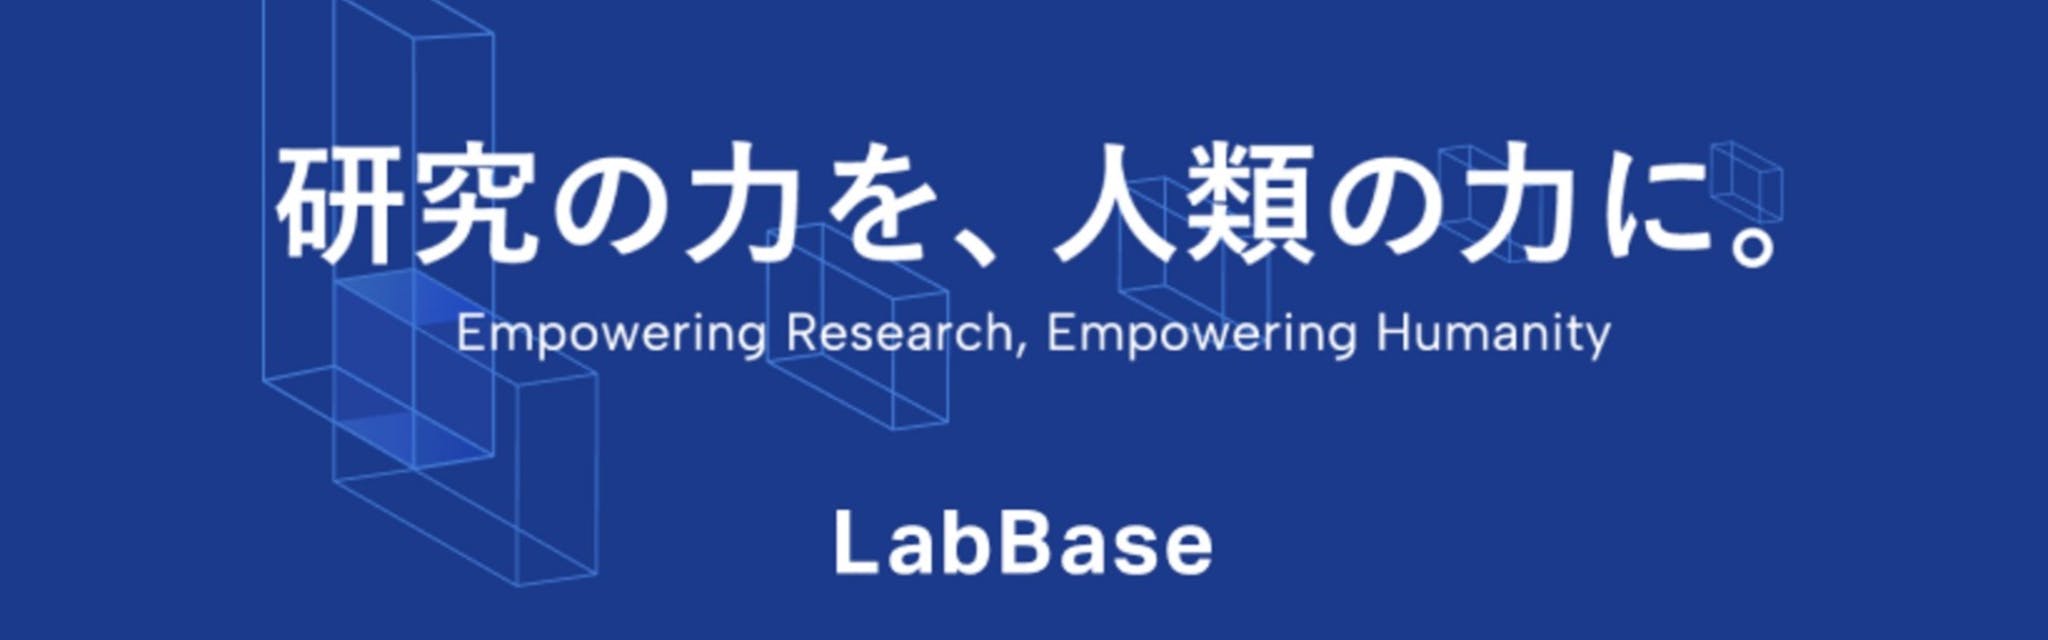 株式会社LabBase - カバー画像